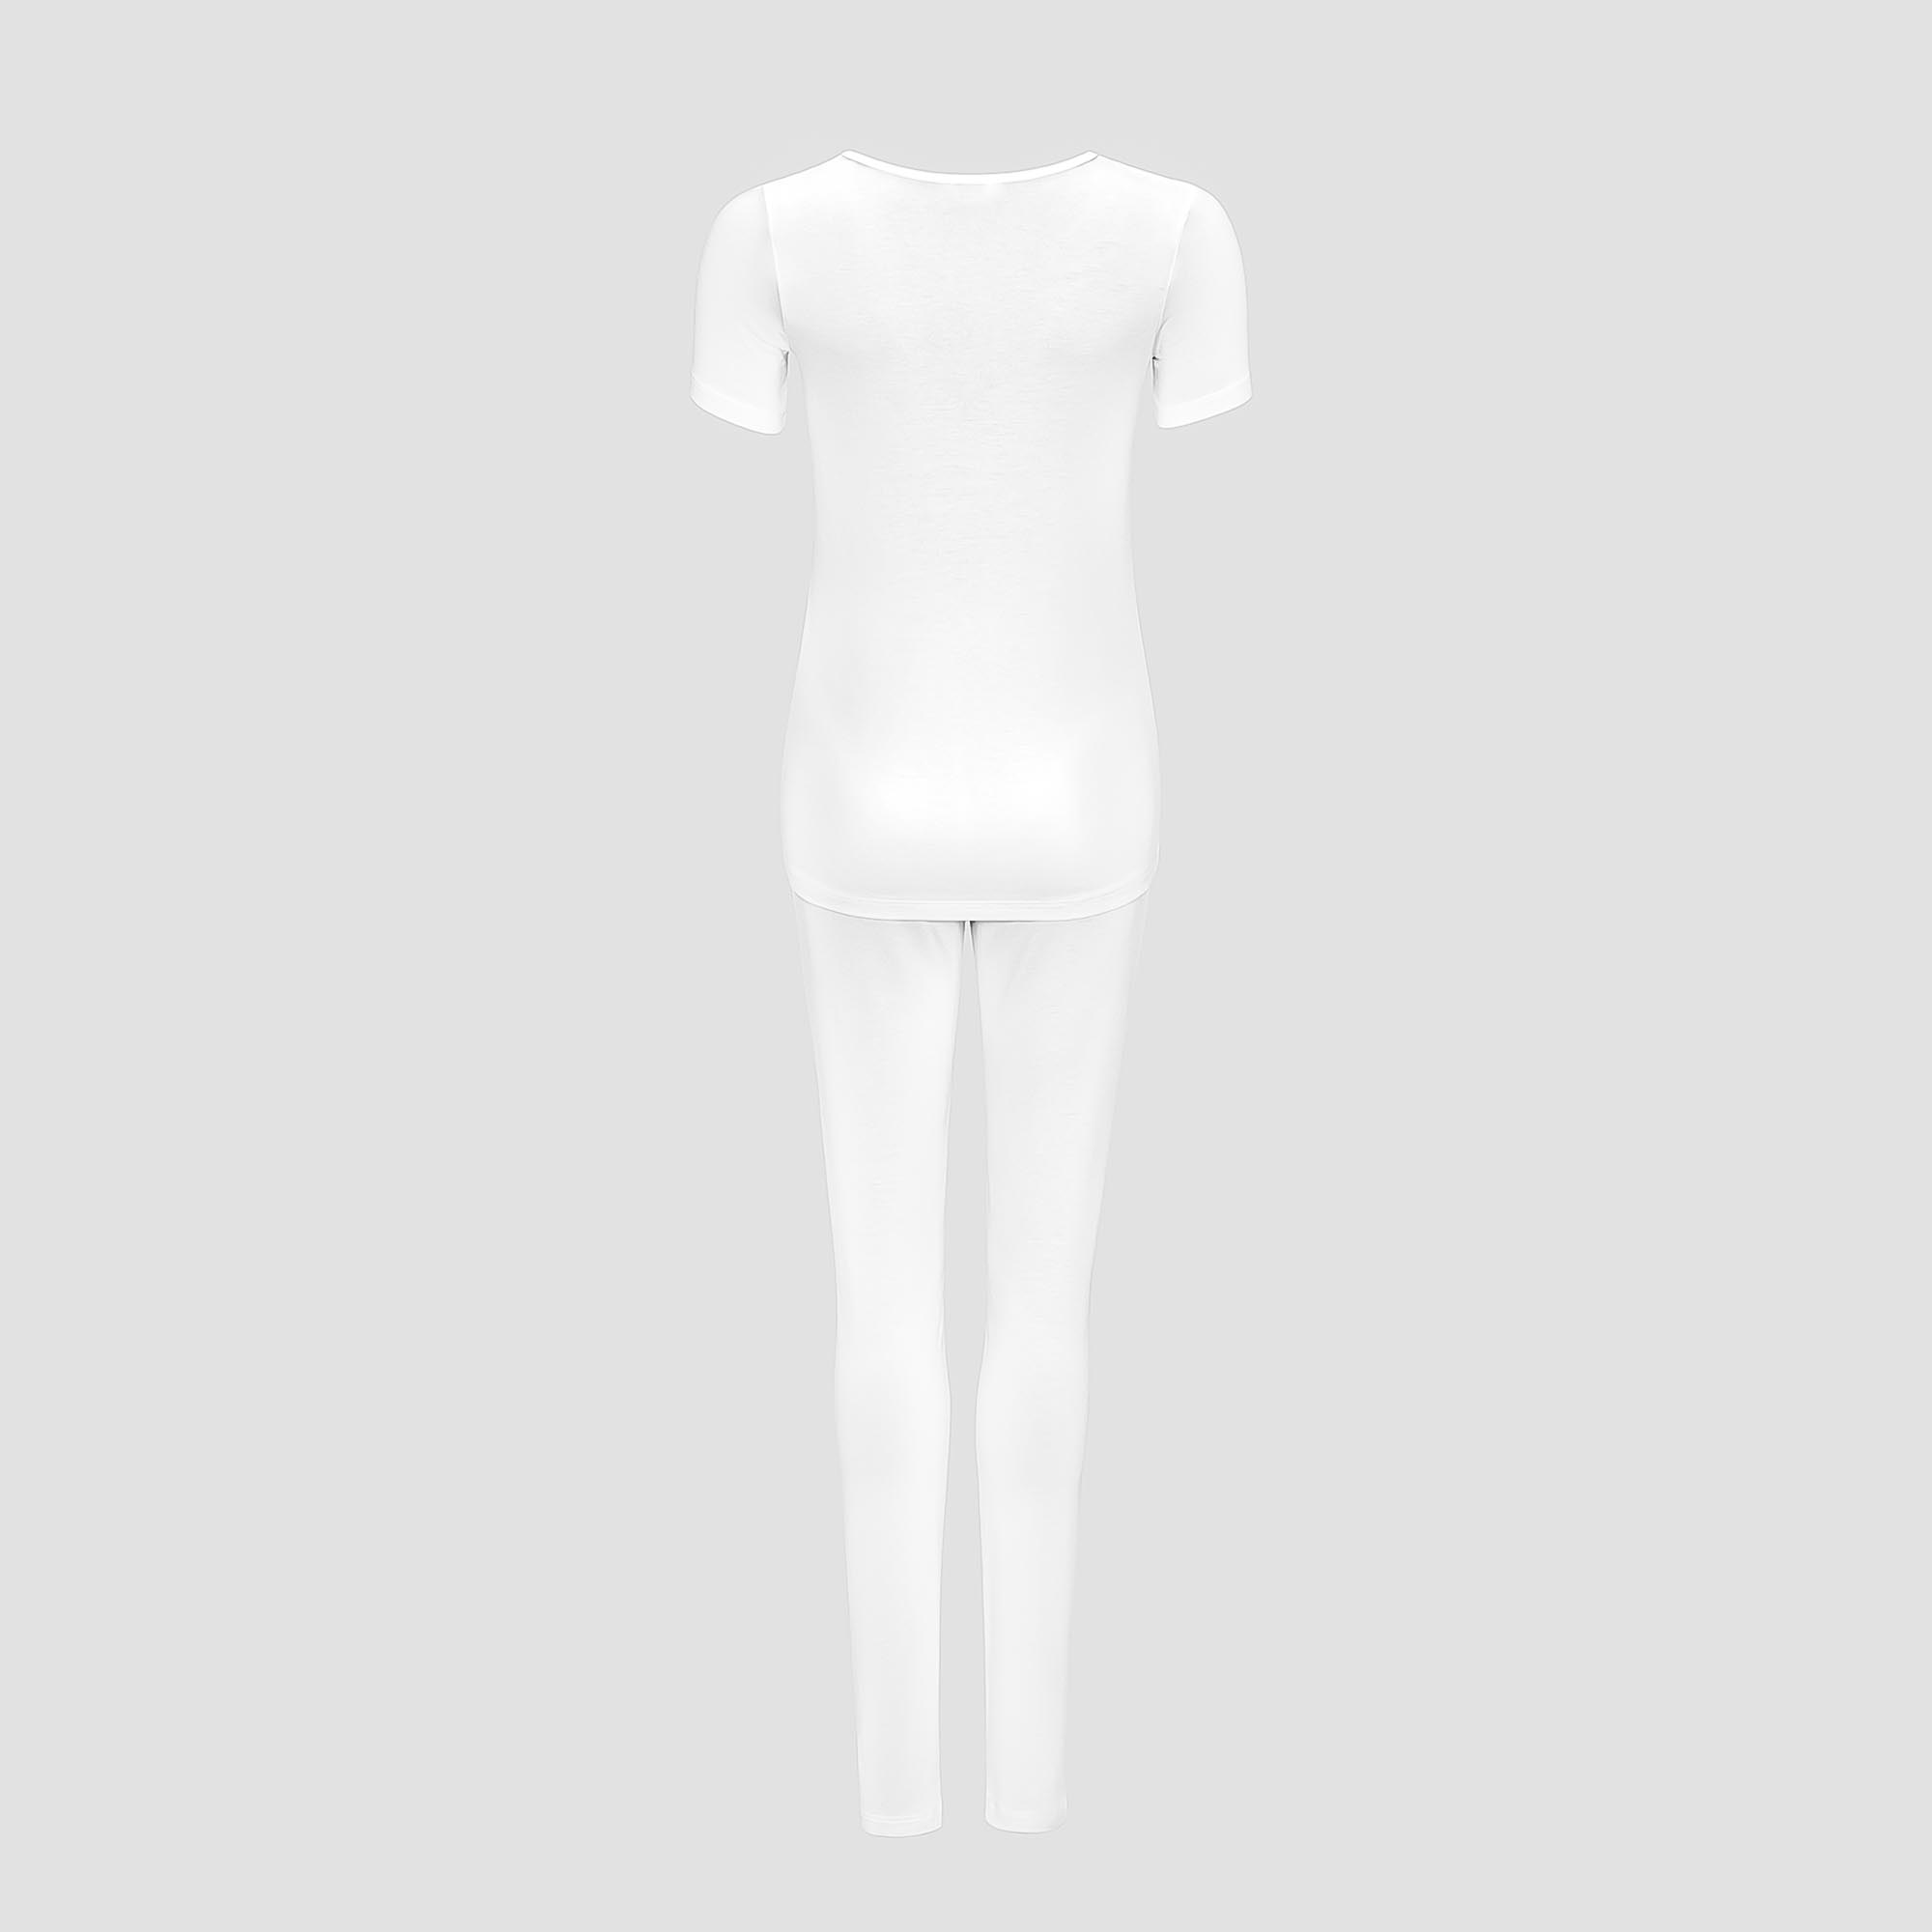 Пижама Togas Ингелла белая женская XXL(52) 2 предмета, цвет белый, размер XXL(52) - фото 3